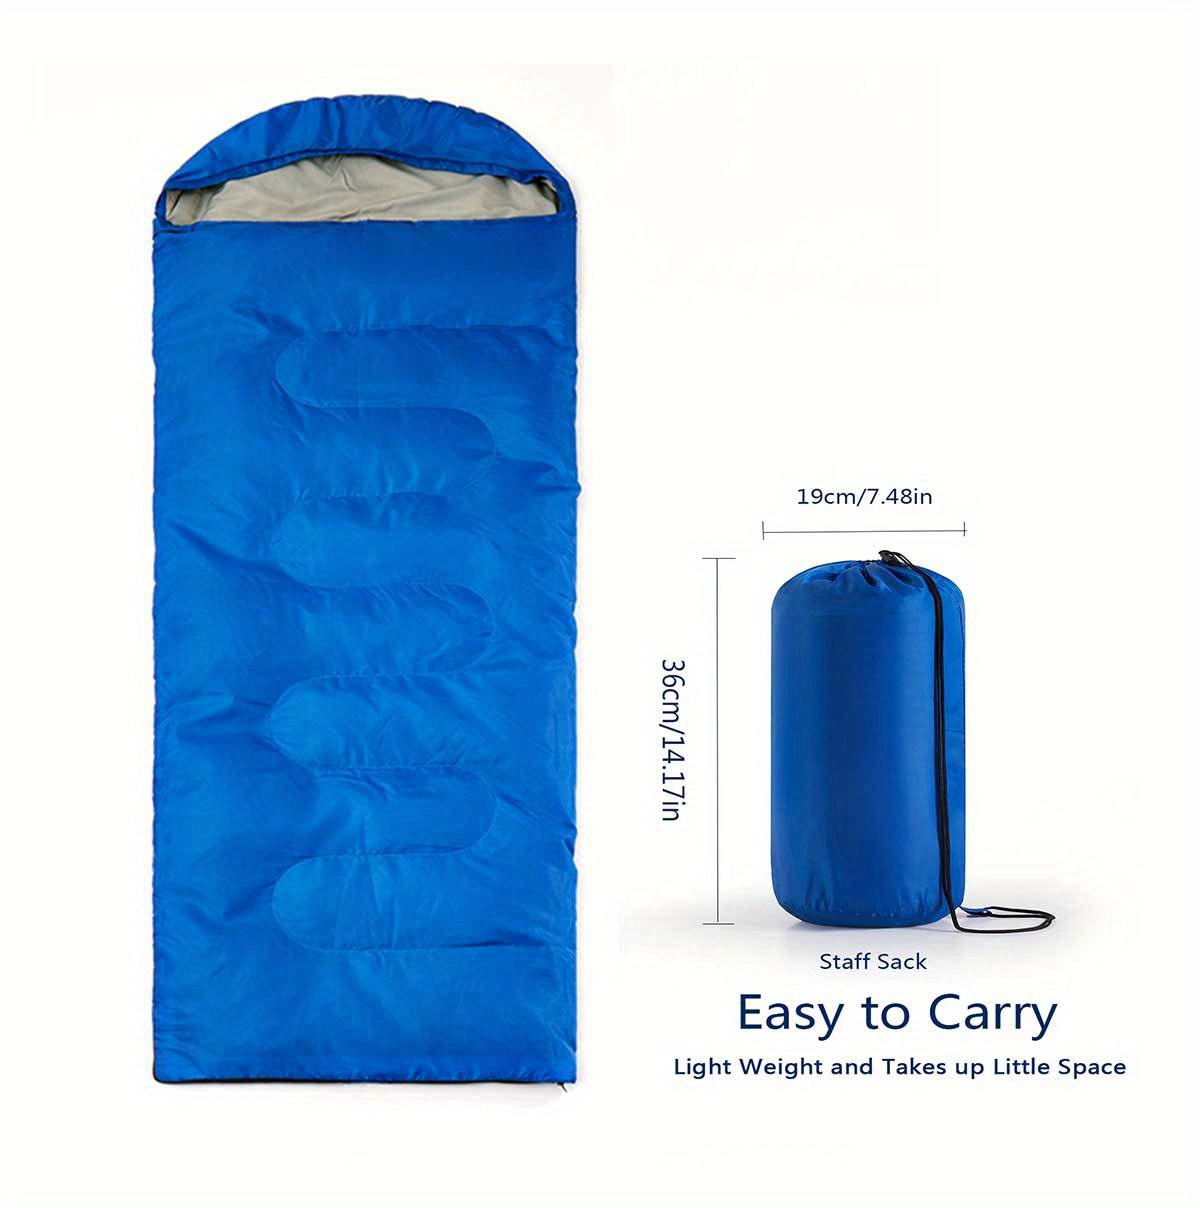 キャンプ用寝袋 - 3 シーズン暖かく涼しい天候 - 夏 春 秋 軽量 男性 女性向け - キャンプ用品、旅行、ハイキング、アウトドア活動に最適